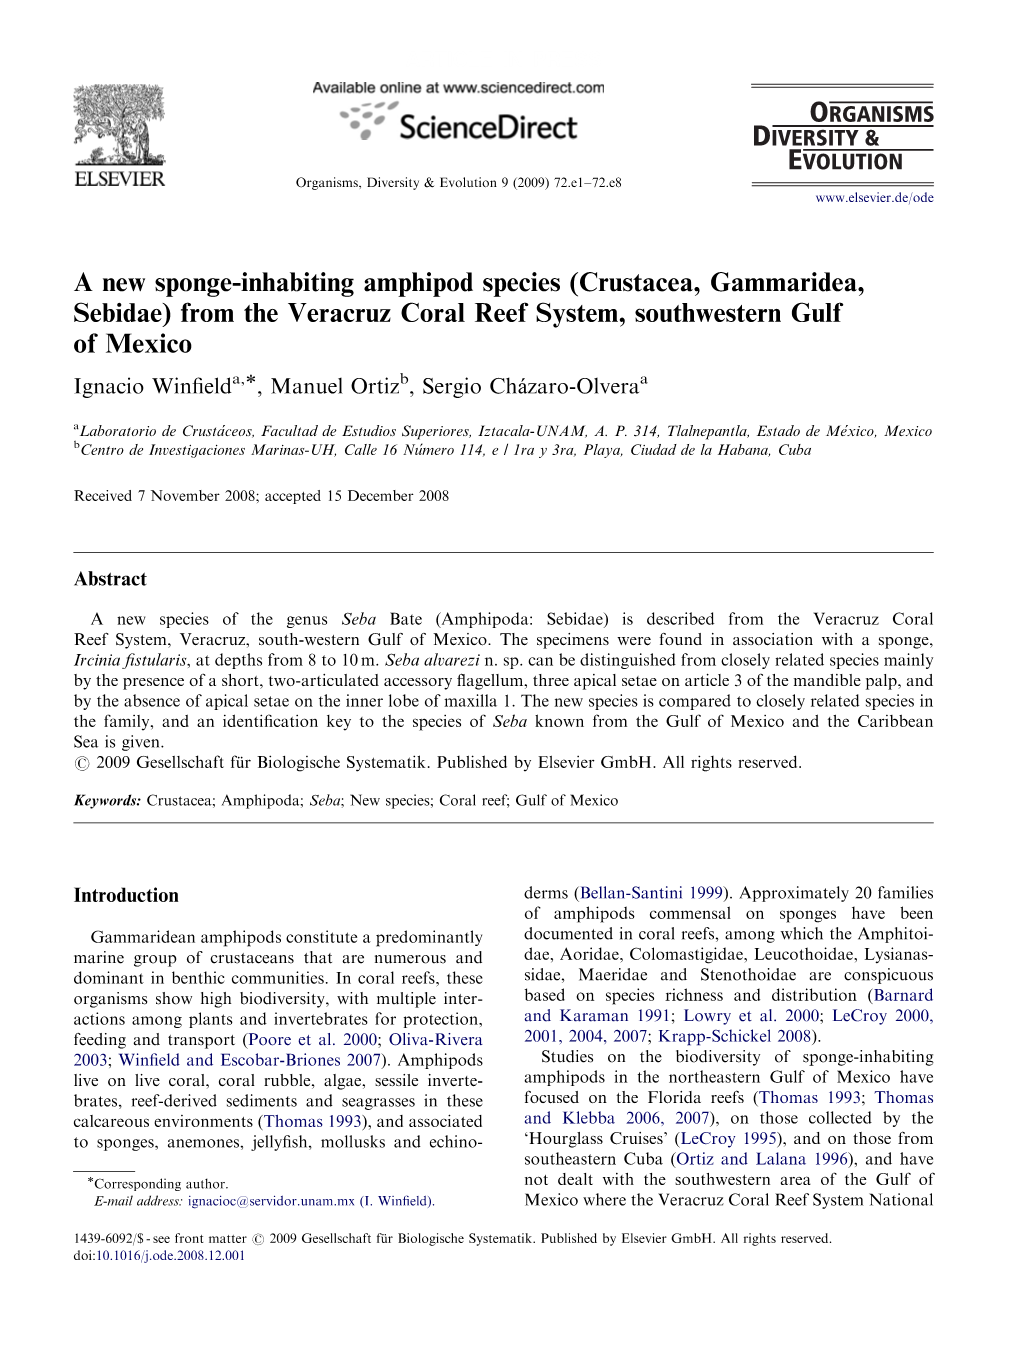 A New Sponge-Inhabiting Amphipod Species (Crustacea, Gammaridea